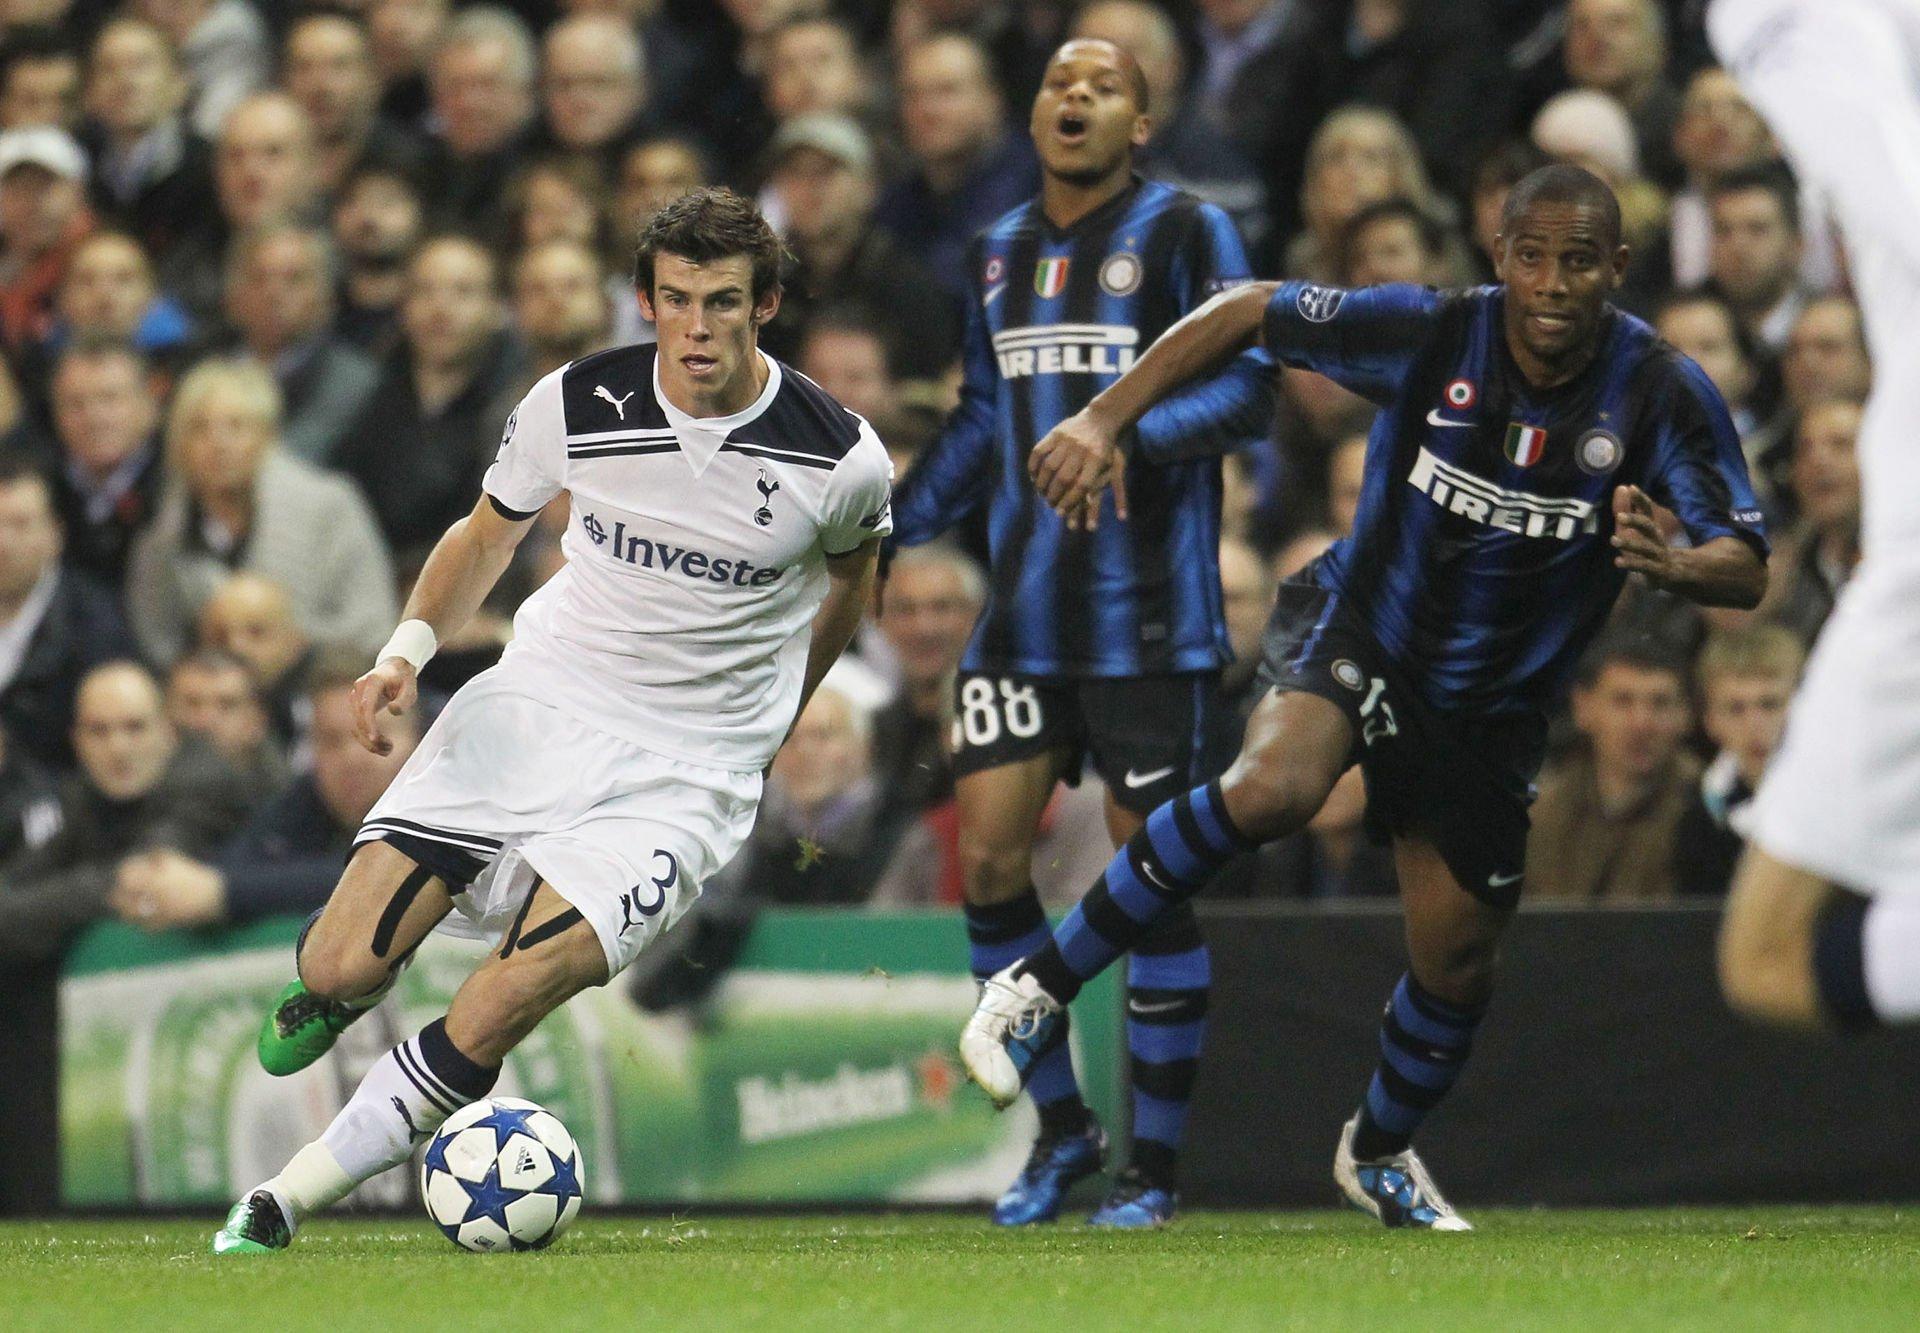 Bằng tốc độ và kĩ thuật siêu hạng, Bale hoàn toàn biến Maicon thành một "gã hề" trong cả 2 lần đối đầu (Nguồn: Internet).